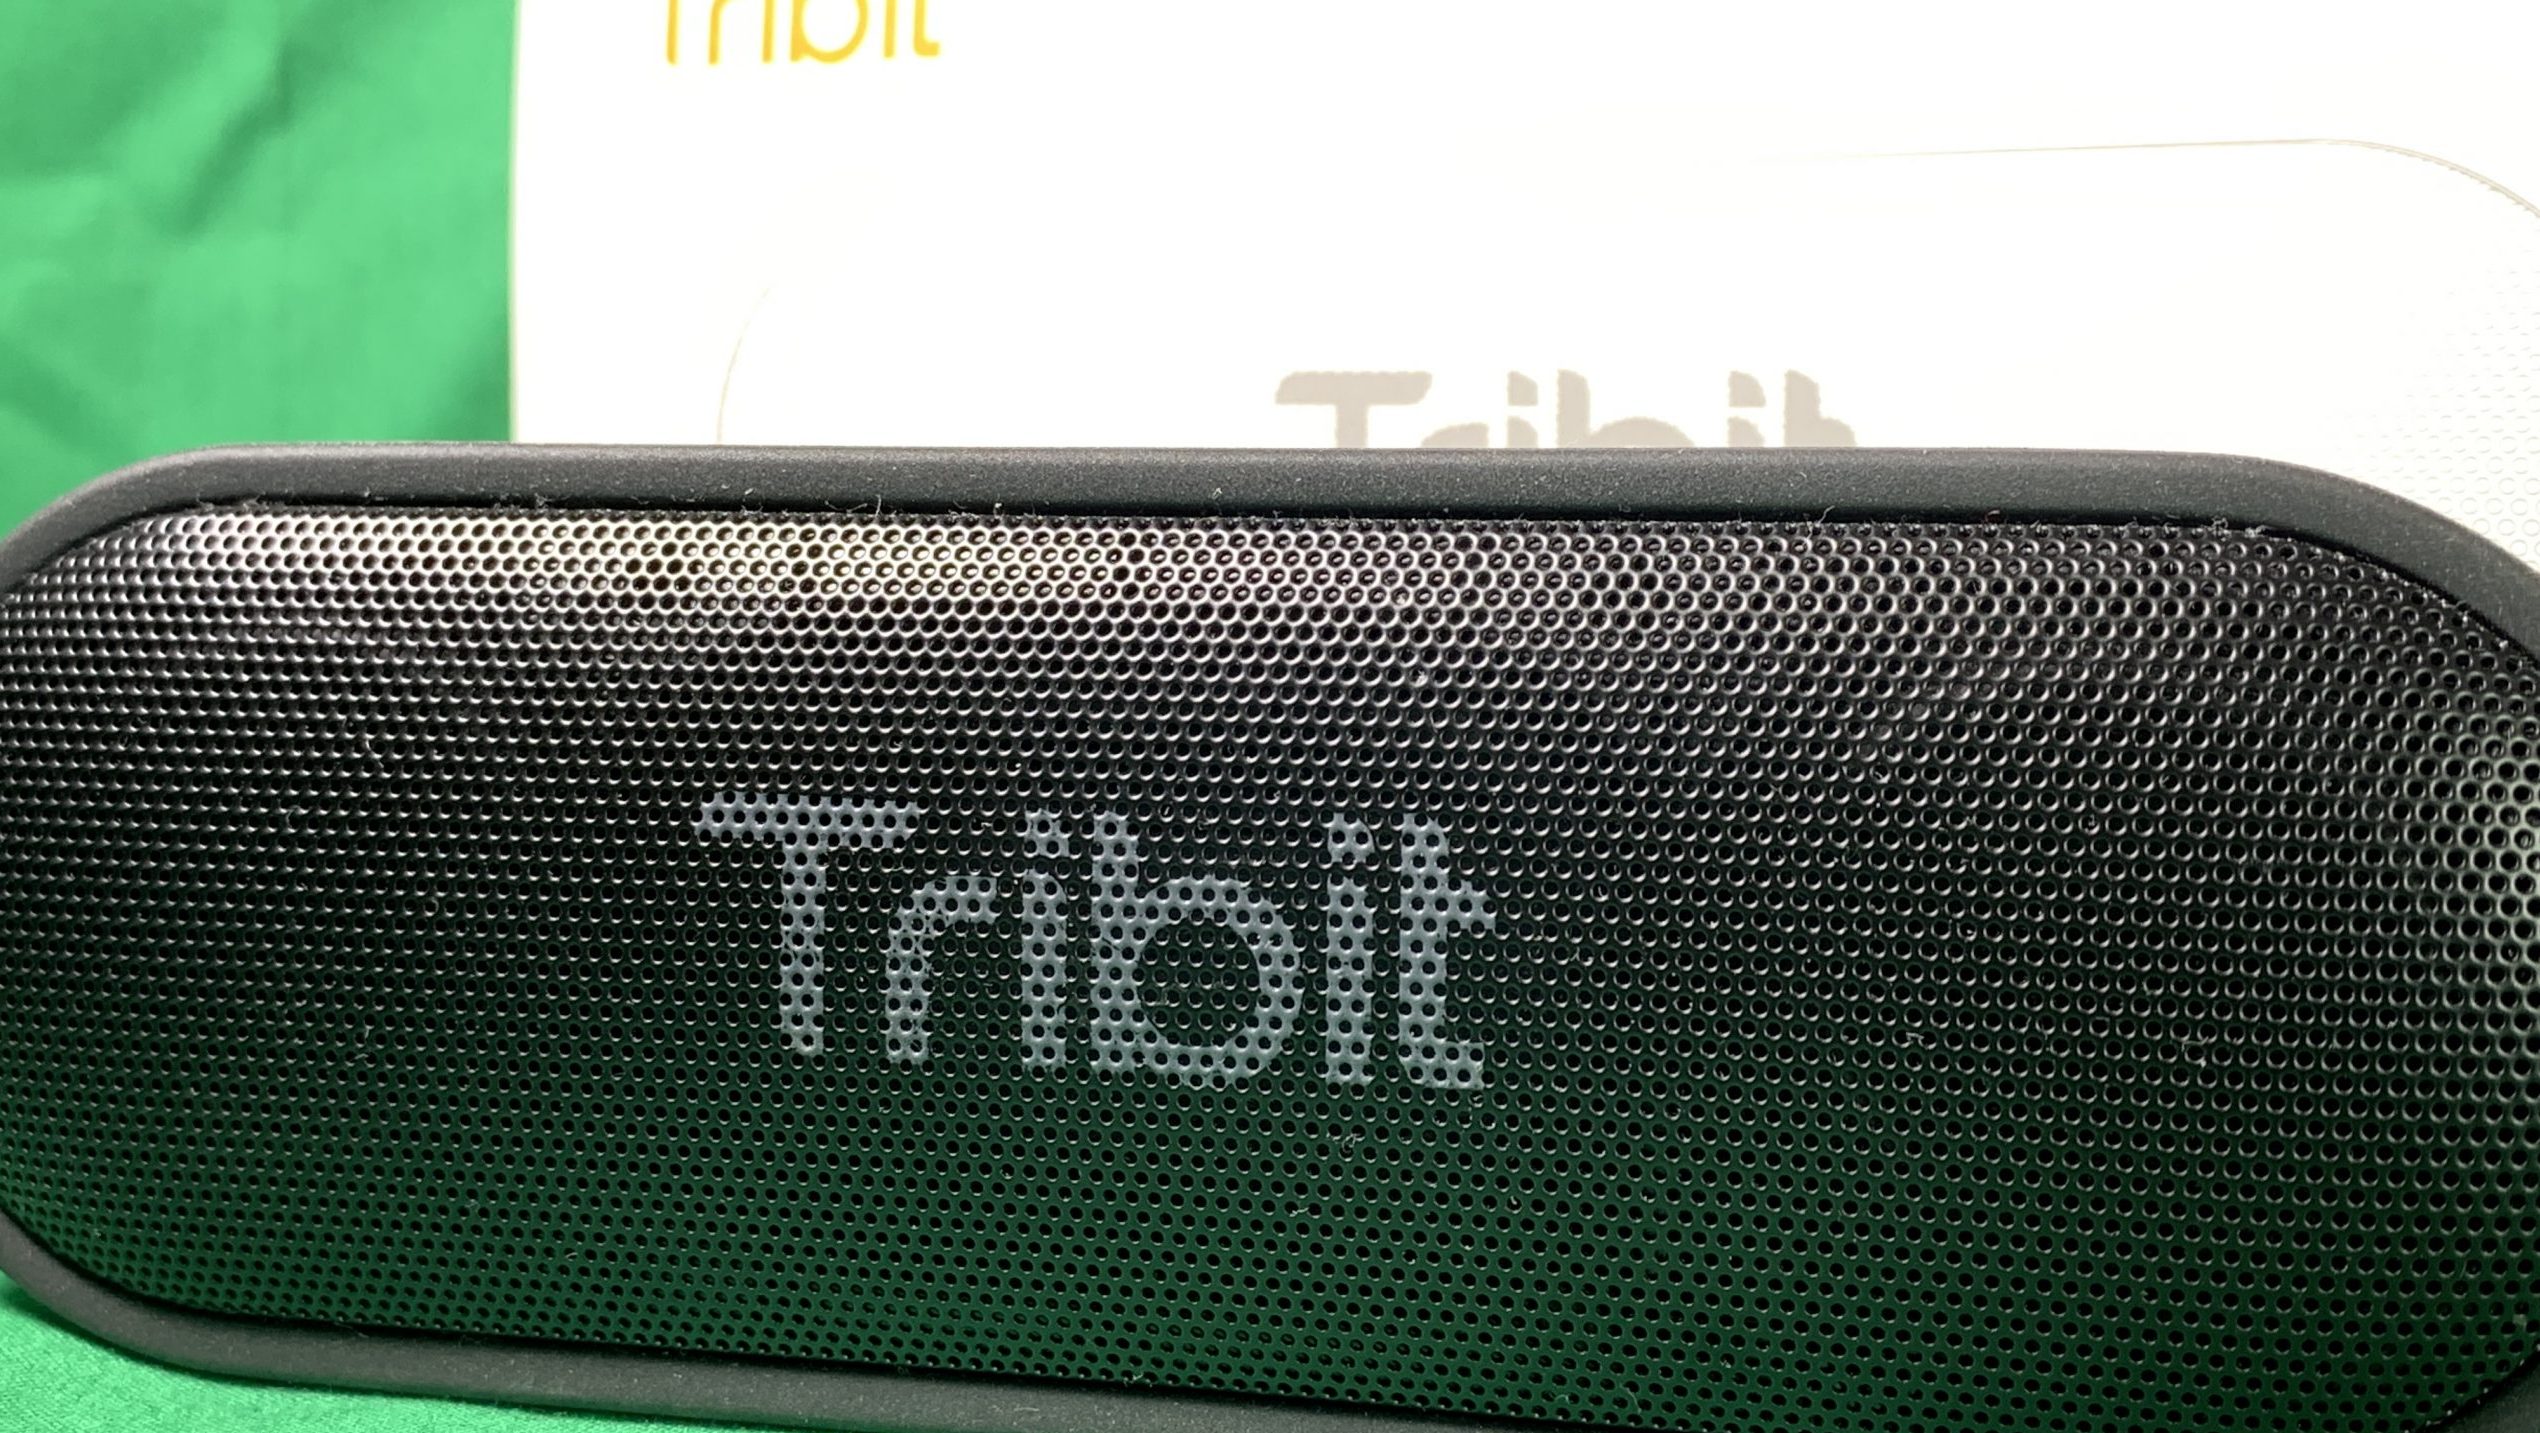 Amazon高評価スピーカー Tribit XSound Go を買ってみた。 | こたらぼ